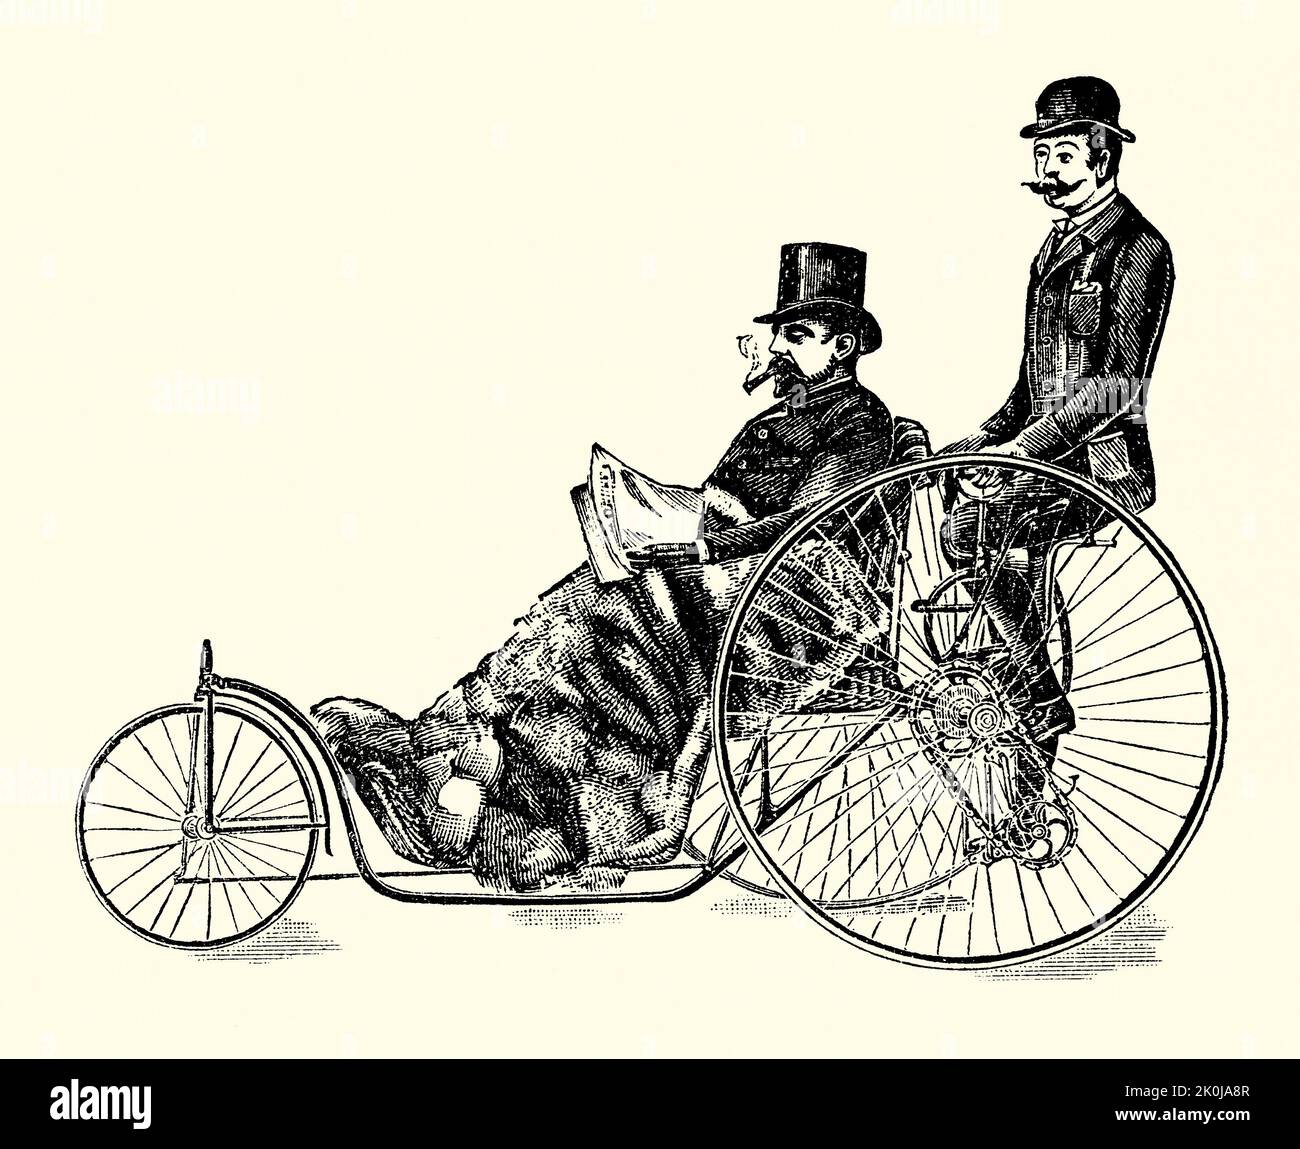 Eine alte viktorianische Gravur von Starleys ‘Coventry Chair’. Es stammt aus einem Buch von 1890. Starley und Sutton Co von Meteor Works, Coventry, Warwickshire, West Midlands, England, Großbritannien war ein früher Pionier der Fahrräder. Das Unternehmen wurde 1878 von John Kemp Starley und William Sutton gegründet und stellte „Badesessel“ her, die hinten (wie bei einem Dreirad) ‘Pedalieren vorgesehen waren – diese wurden als Coventry Chairs bekannt. Ihr ‘Rover’ Fahrraddesign wird oft als das erste ‘moderne Fahrrad’ anerkannt. Stockfoto